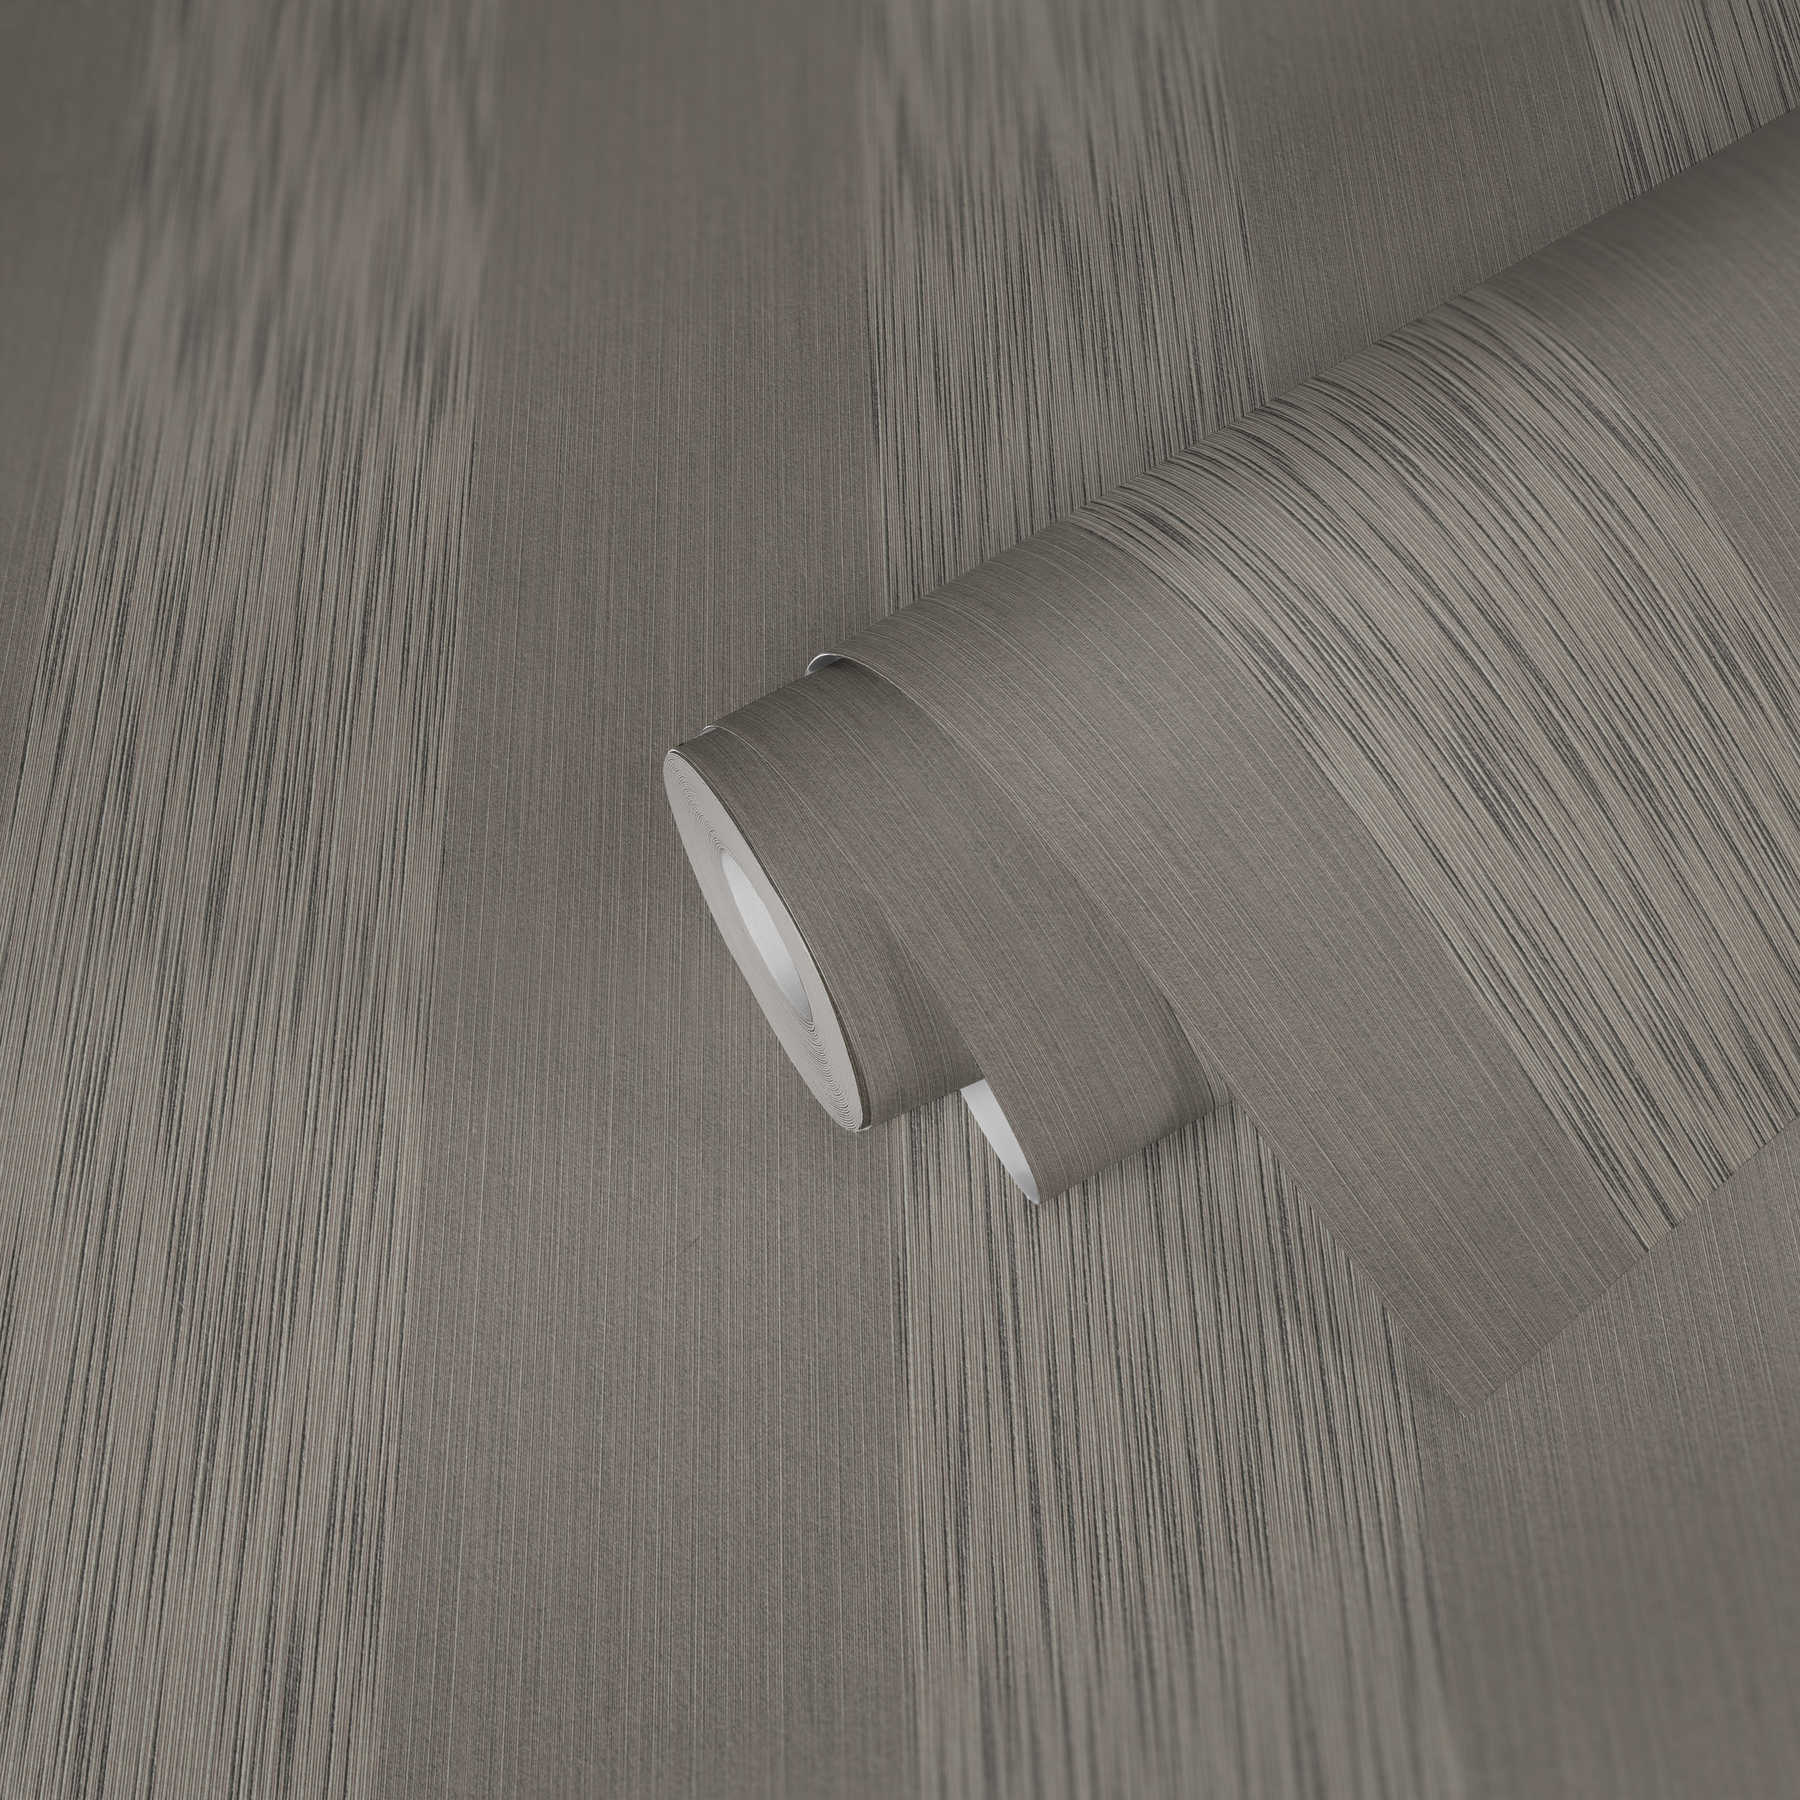             Melierte Streifen Tapete mit Struktureffekt – Grau
        